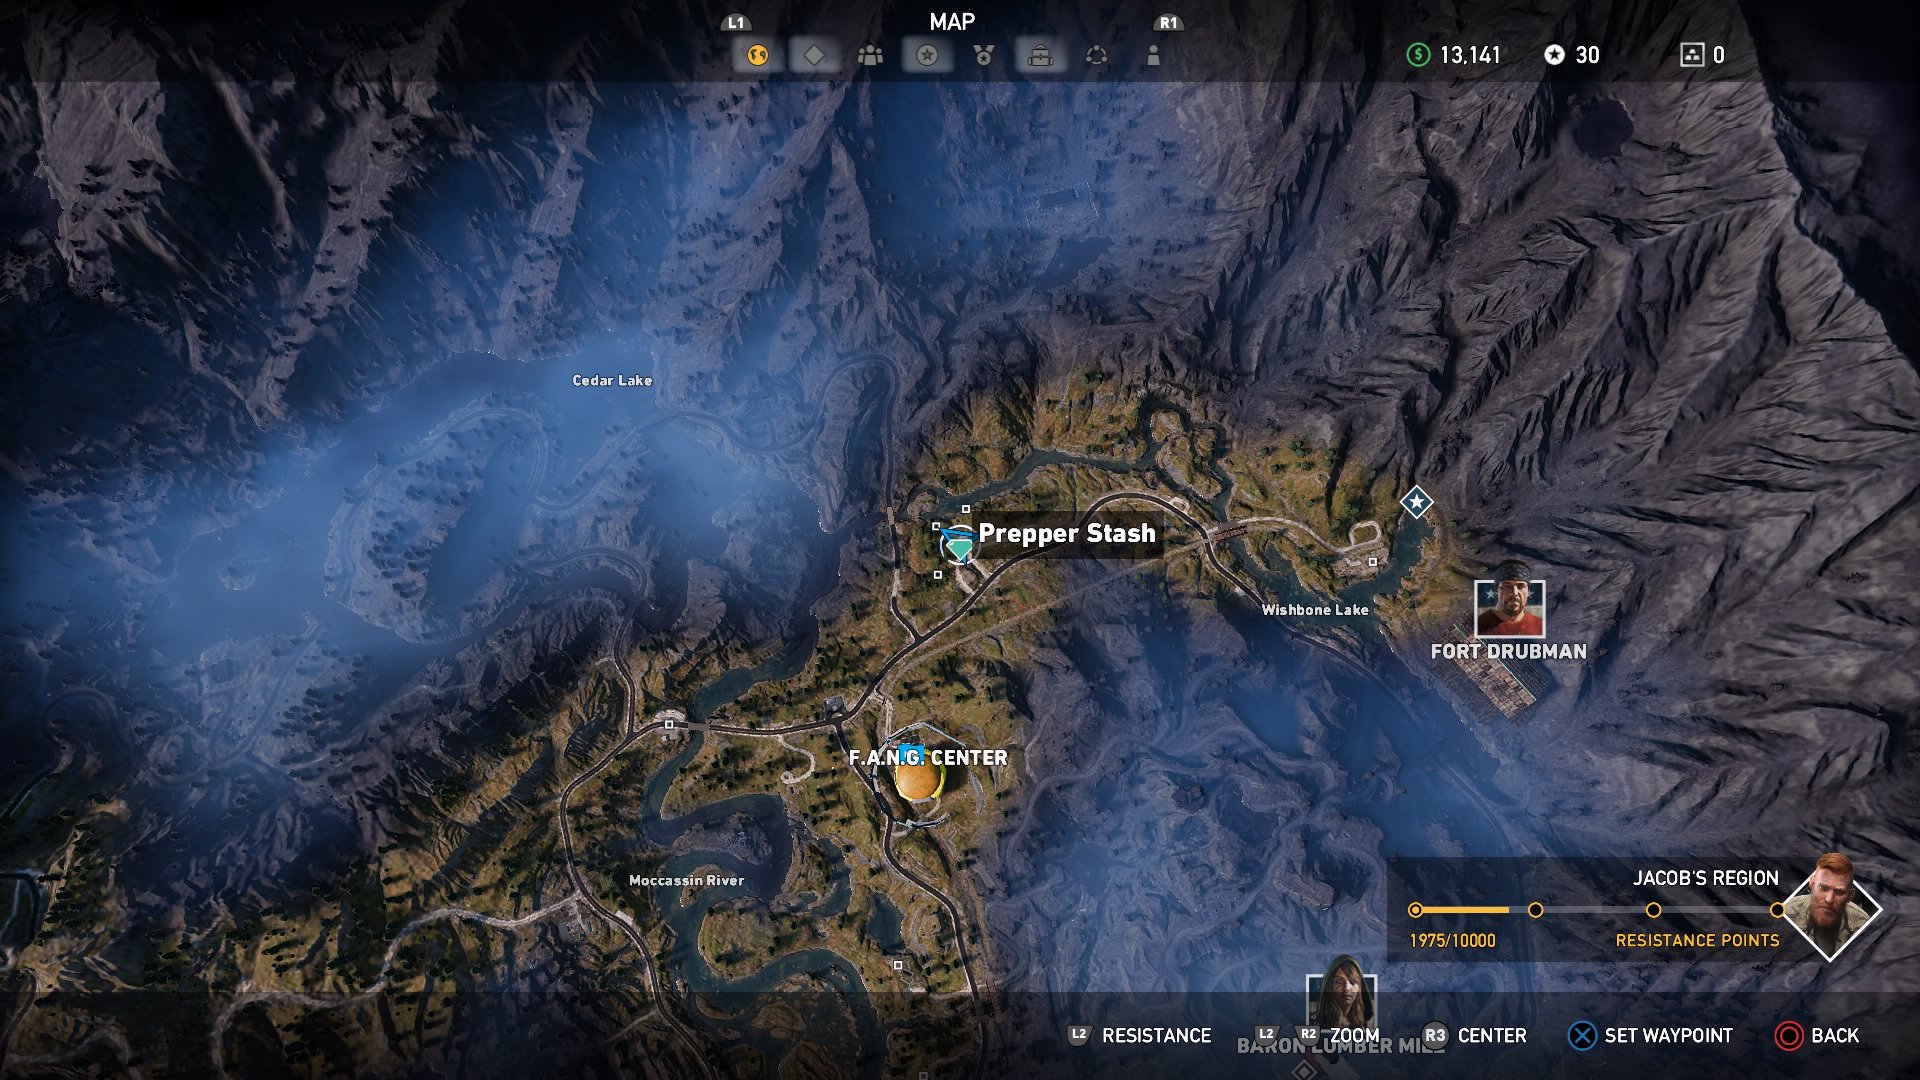 Тайники в фар край 5. Far Cry 5 тайники выживальщиков горы. Горы Уайттейл far Cry 5 на карте. Тайники фар край 5. Карта тайников фар край 5 регион Иакова.